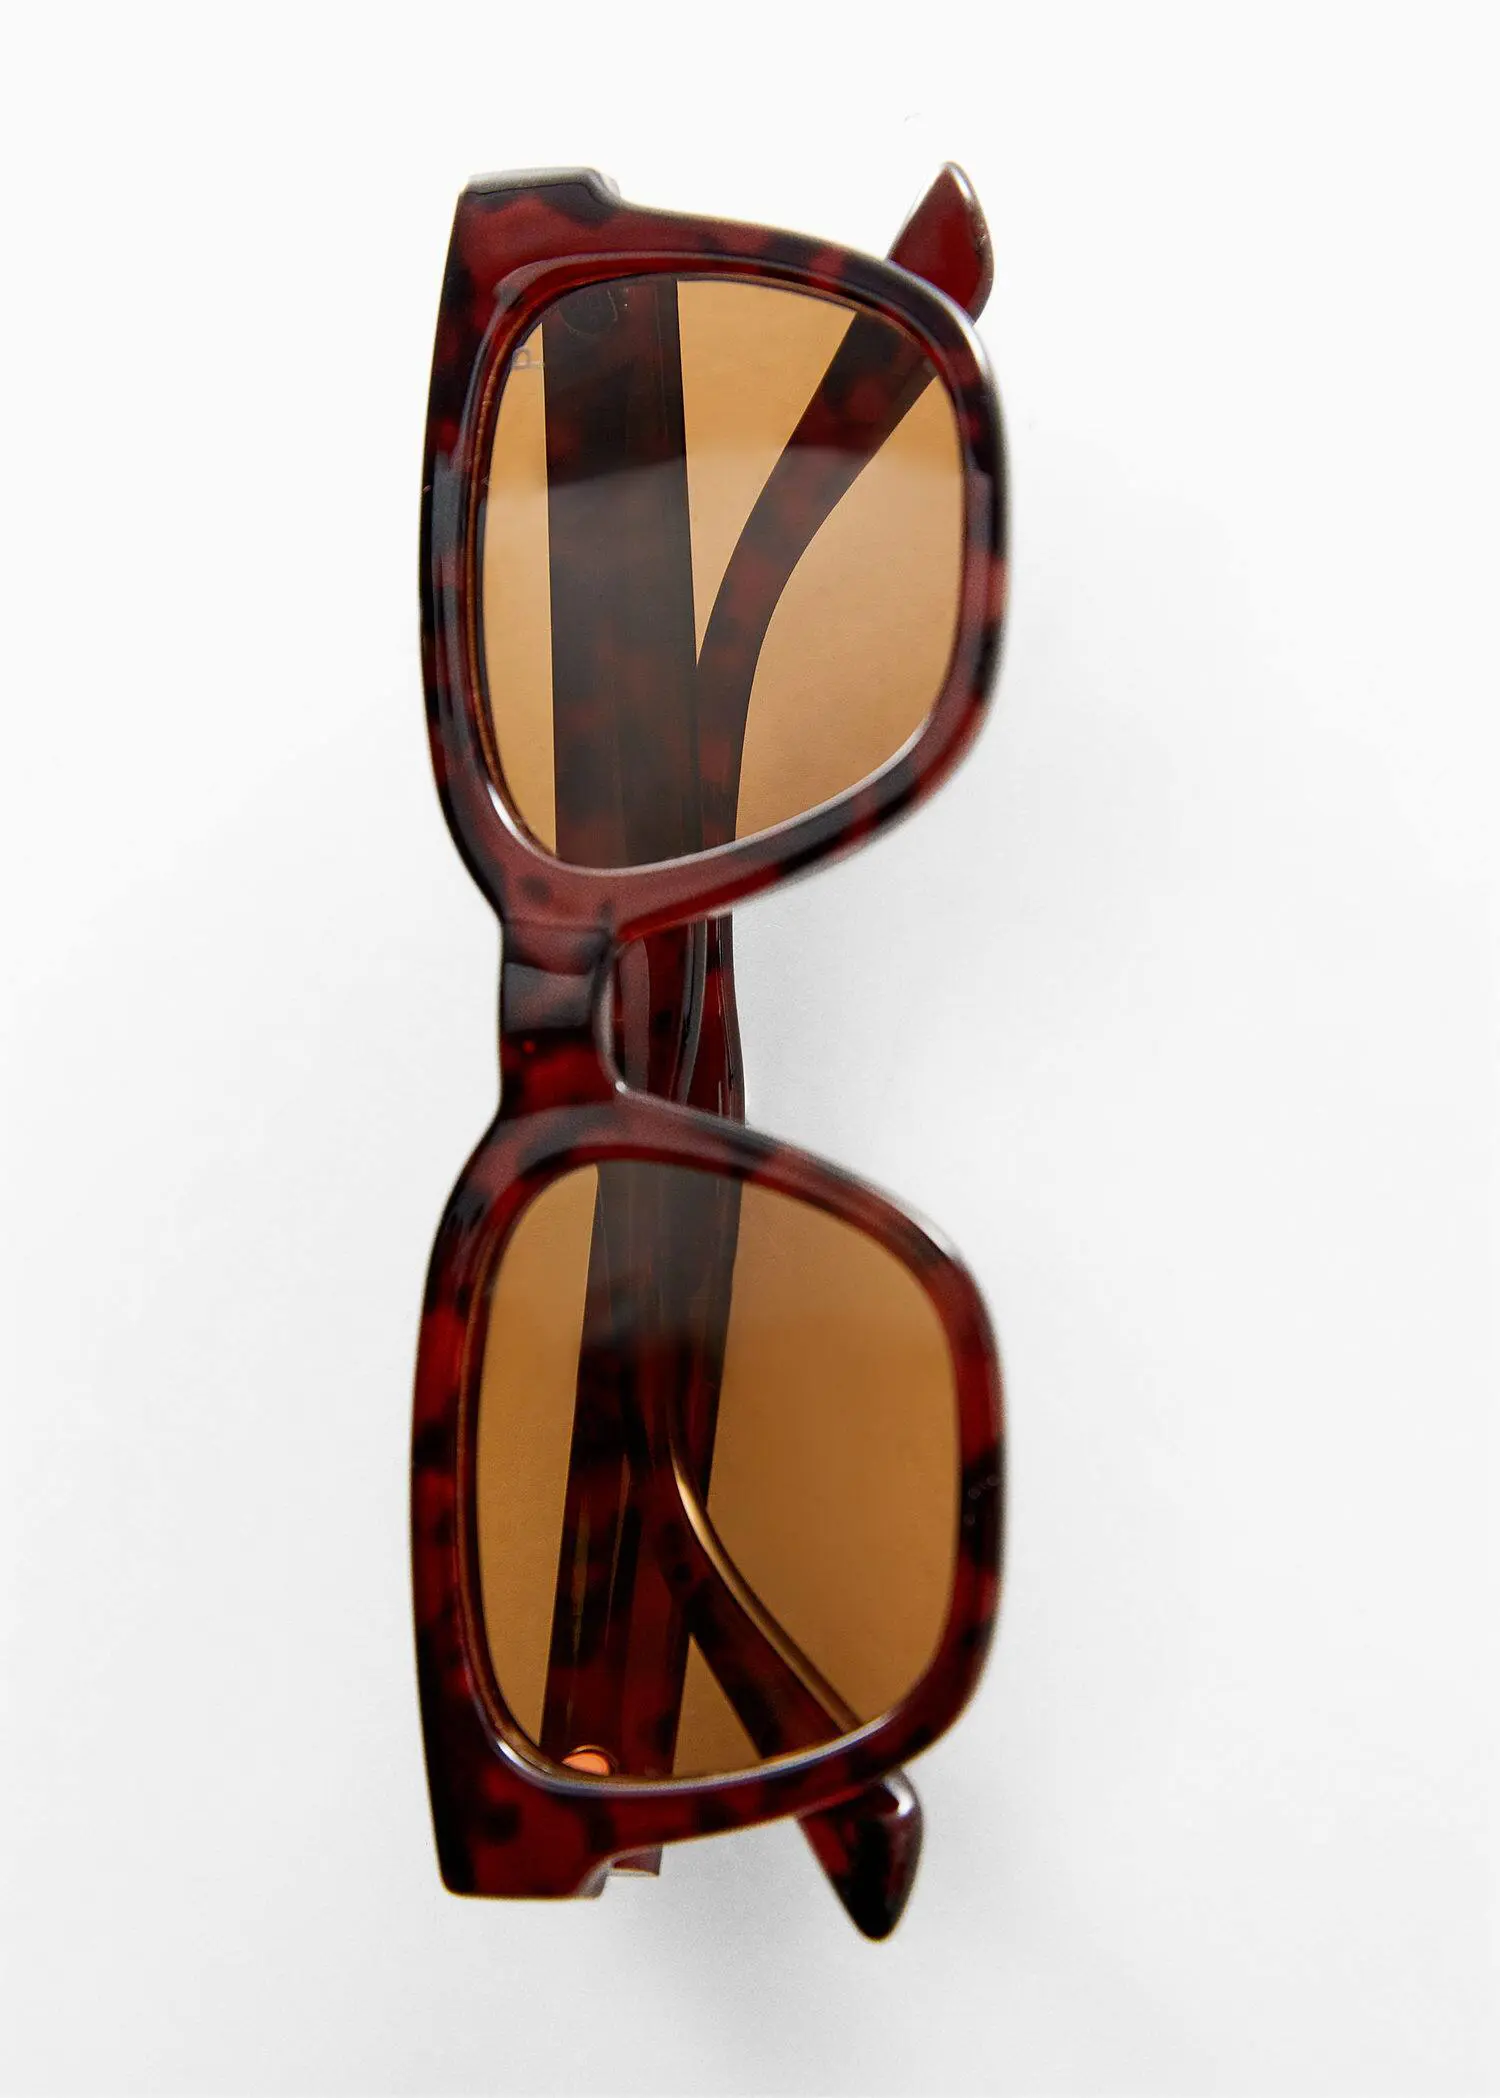 Mango Polarized sunglasses. 1